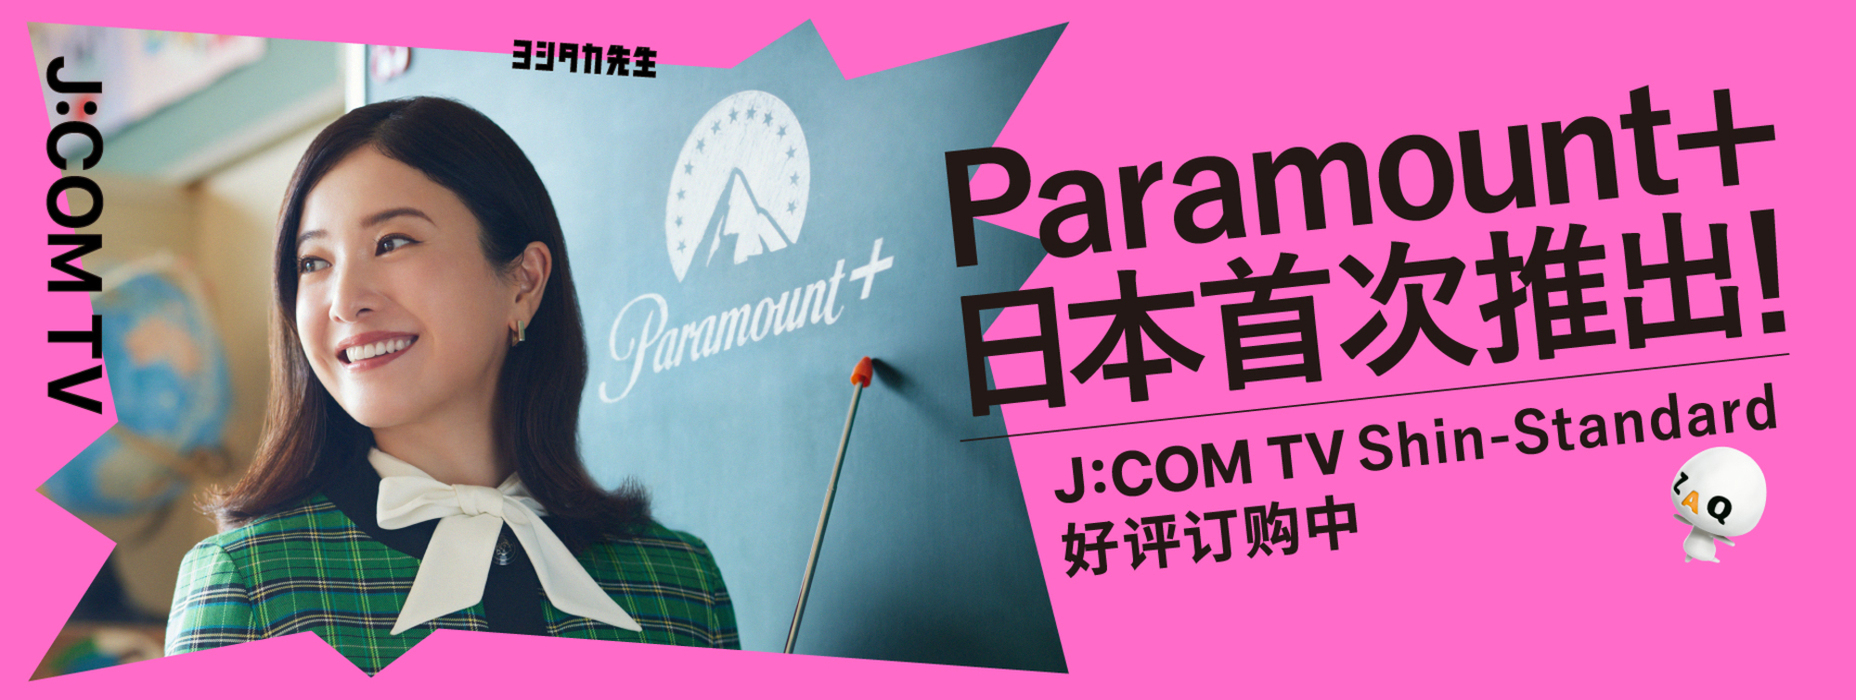 J:COM × Paramount＋J:COM TV Shin Standard登场！遇到意想不到的节目，遇到想看的节目